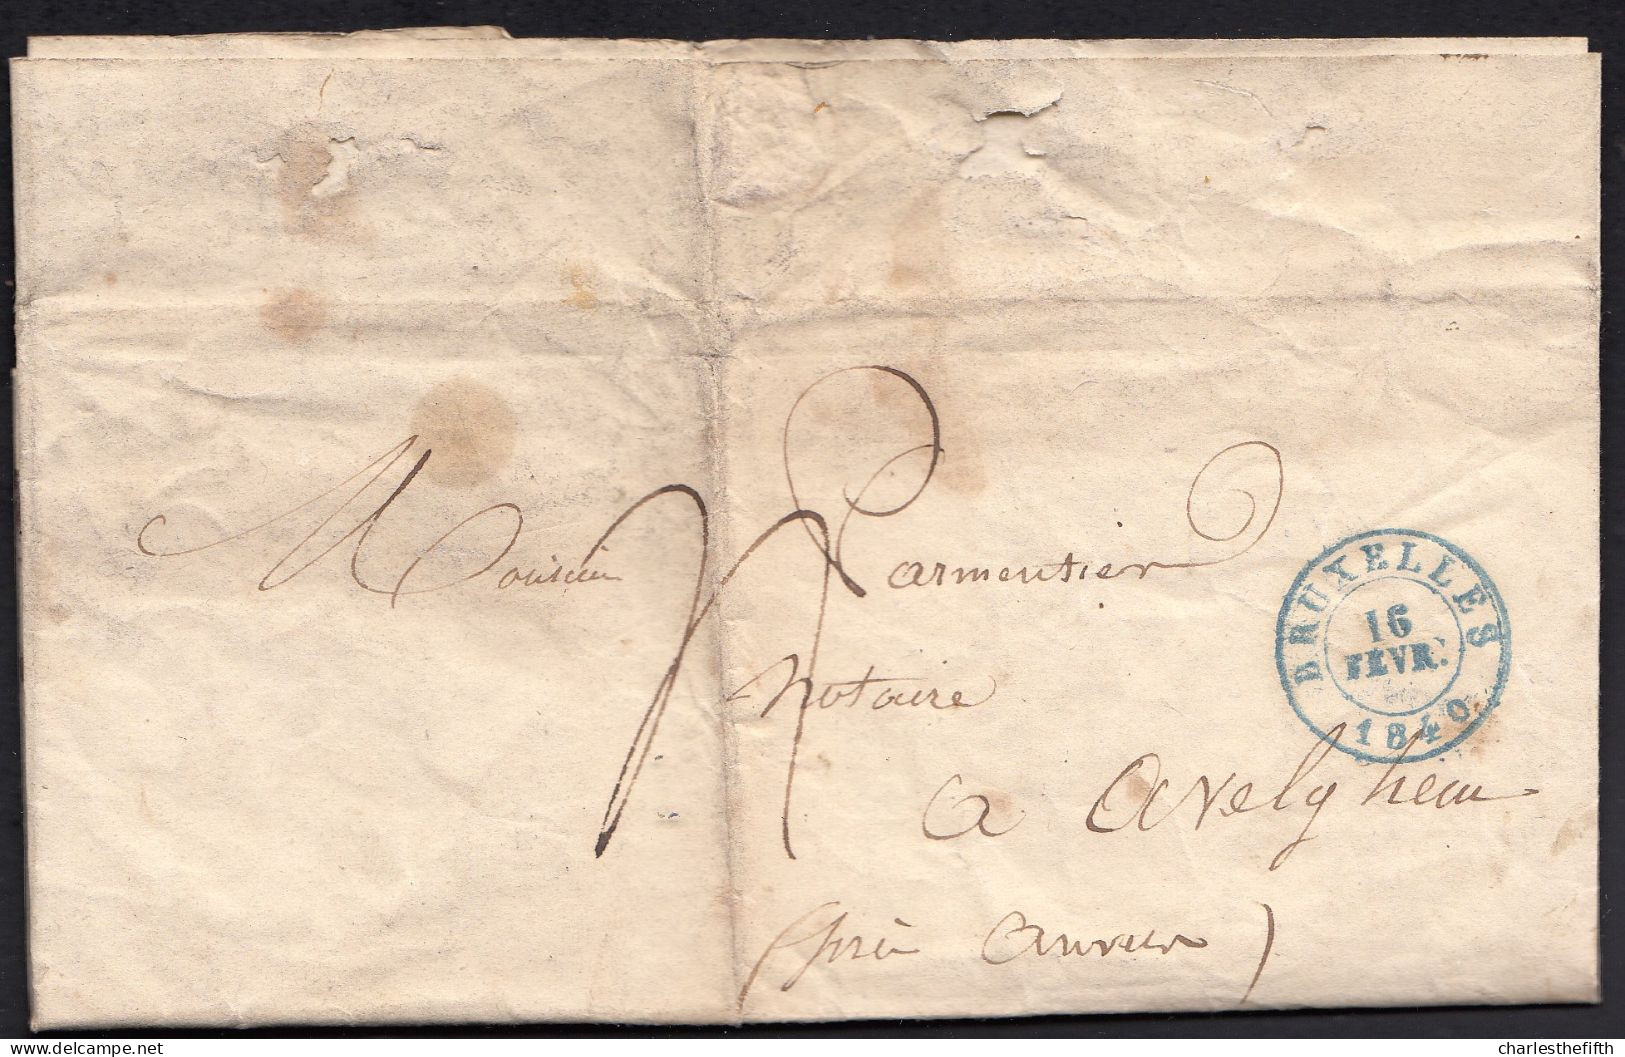 LAC Du 16 Février 1840 - Bruxelles Vers Notaire à Avelghem - Administration Pour La Propagation De L'industrie - 1830-1849 (Belgique Indépendante)